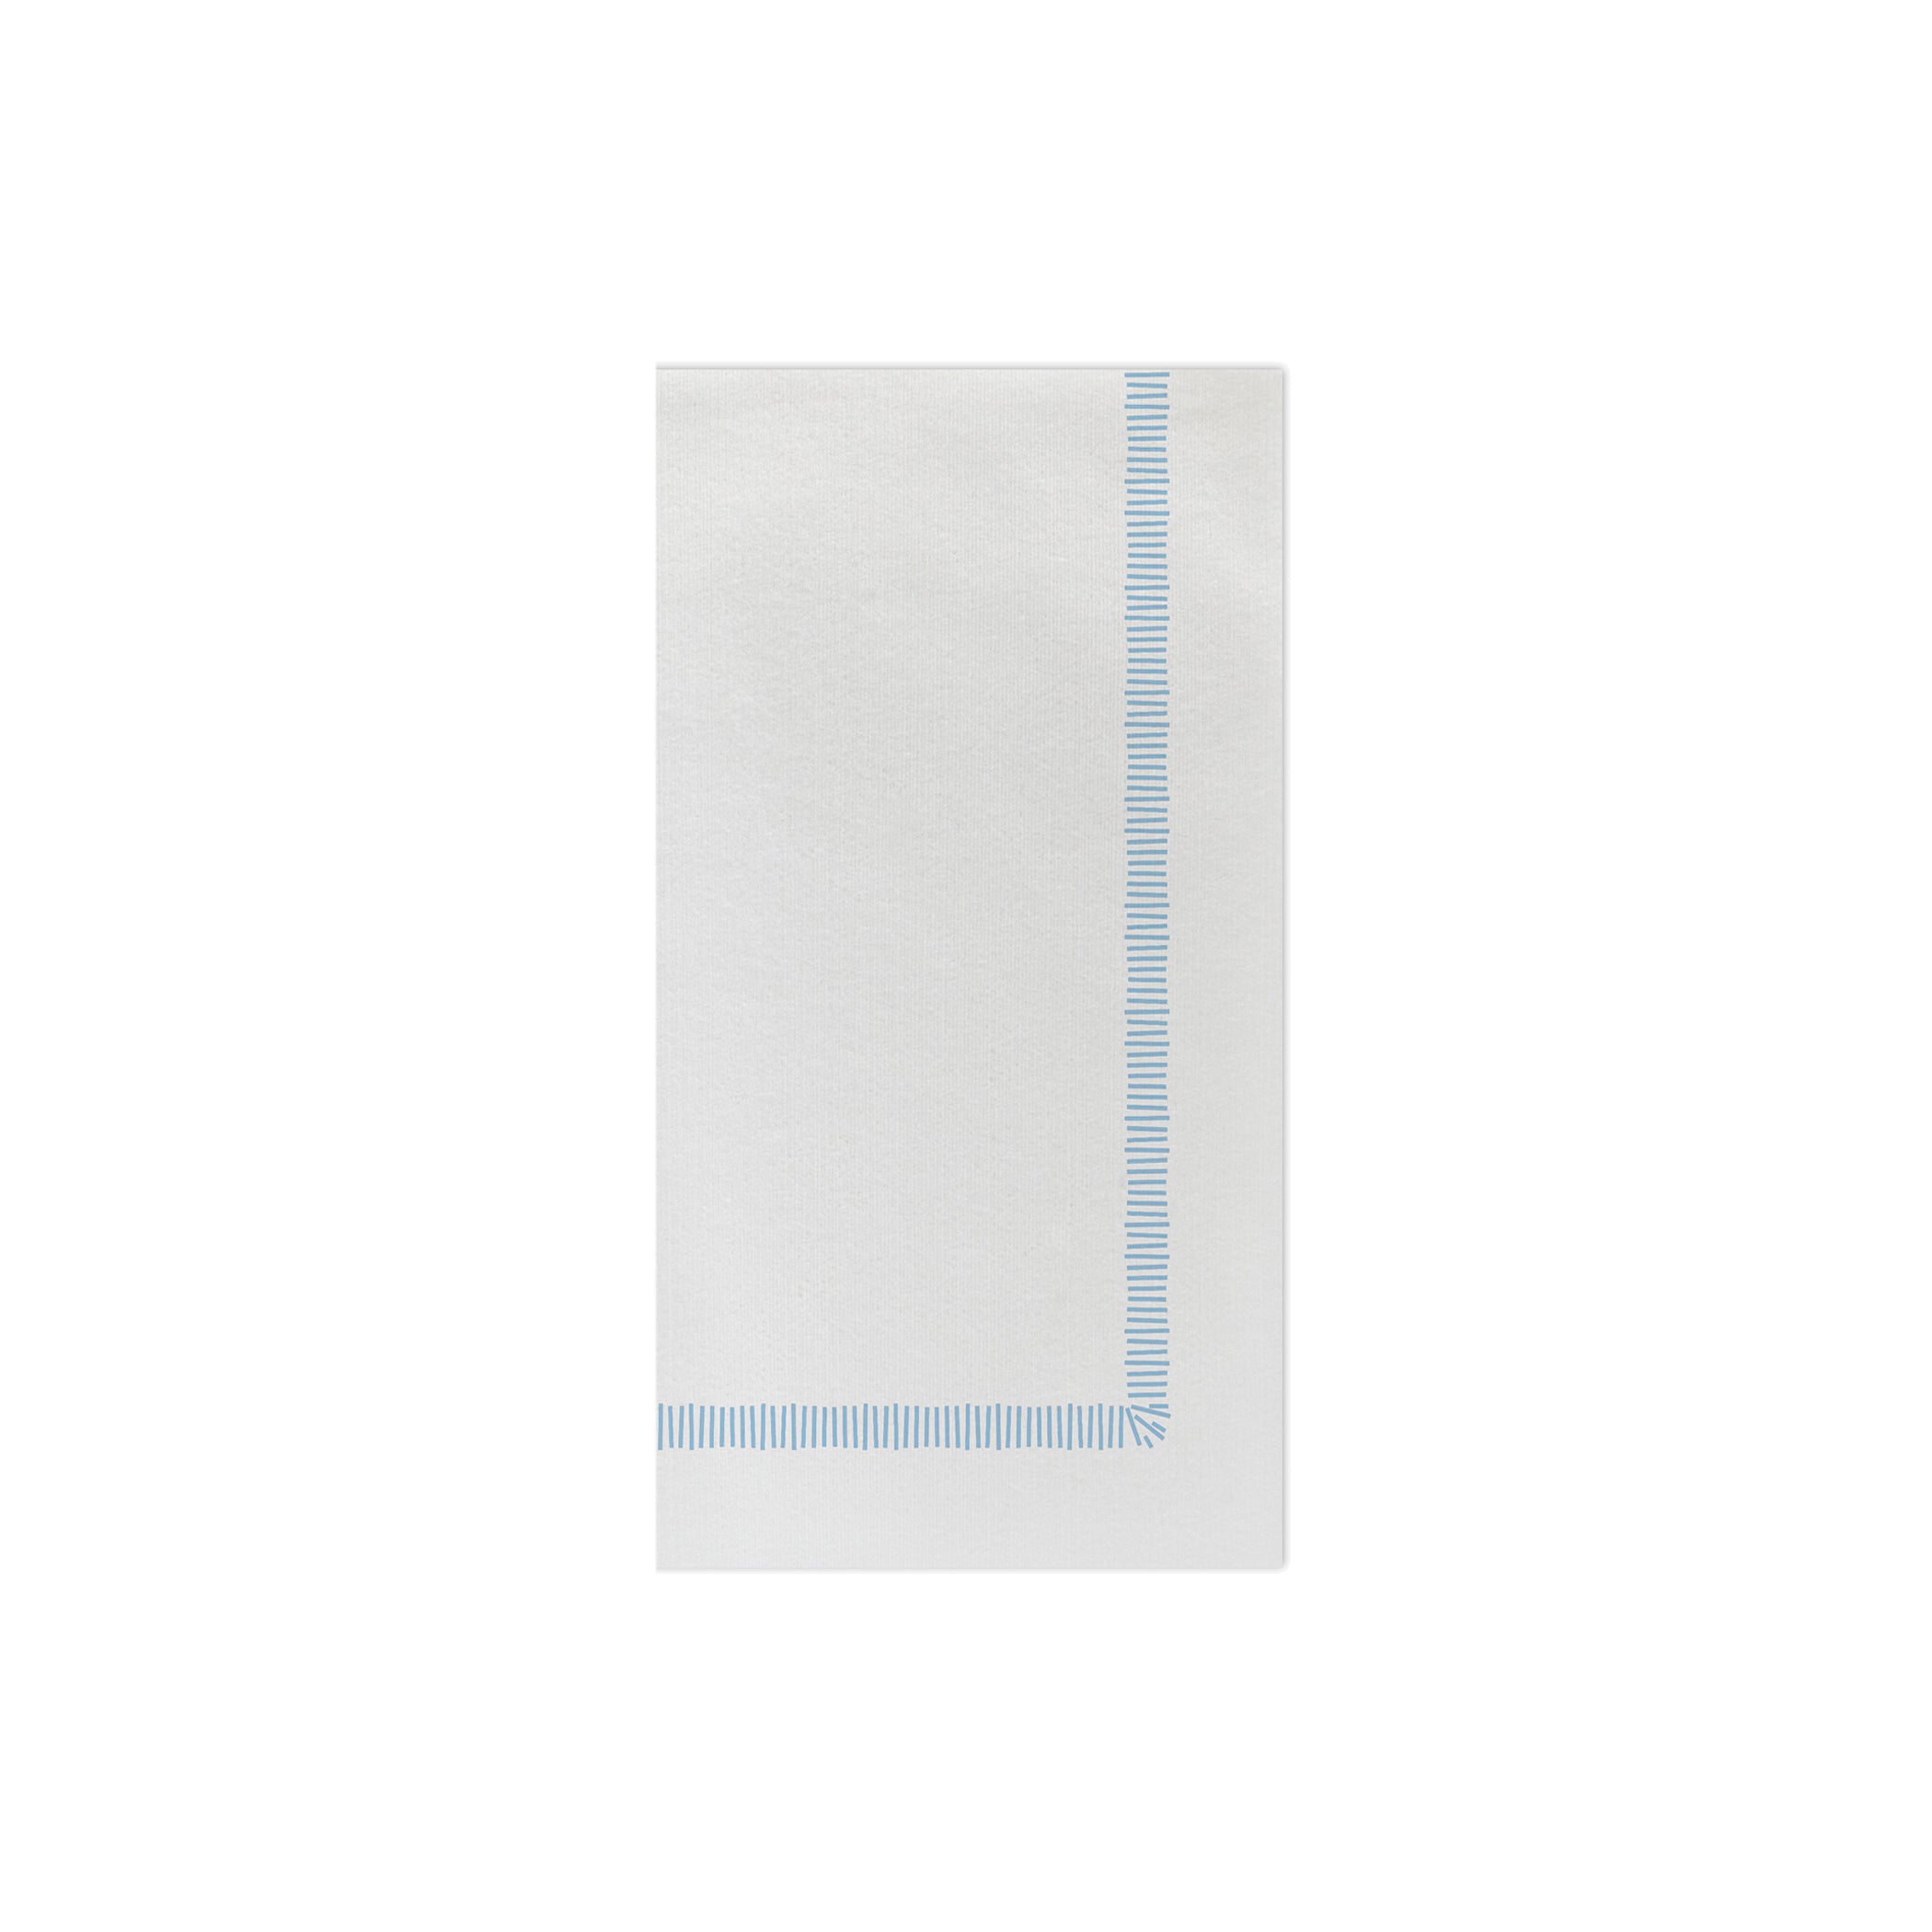 Papersoft Napkins Fringe Light Blue Guest Towels (Pack of 20)